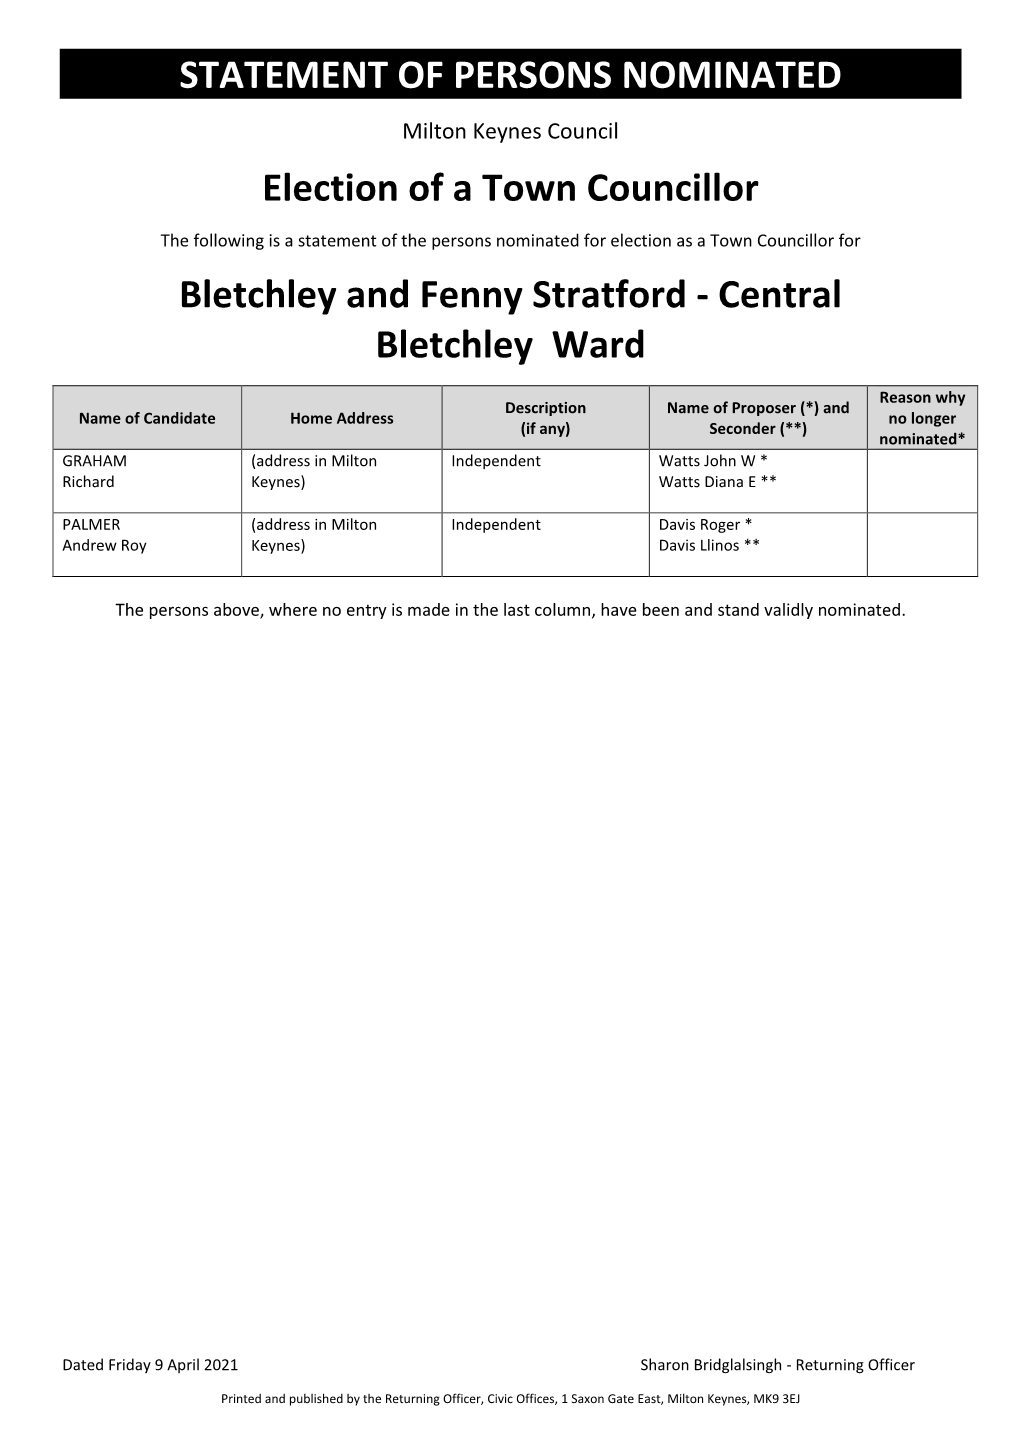 Bletchley & Fenny Stratford Parish Council